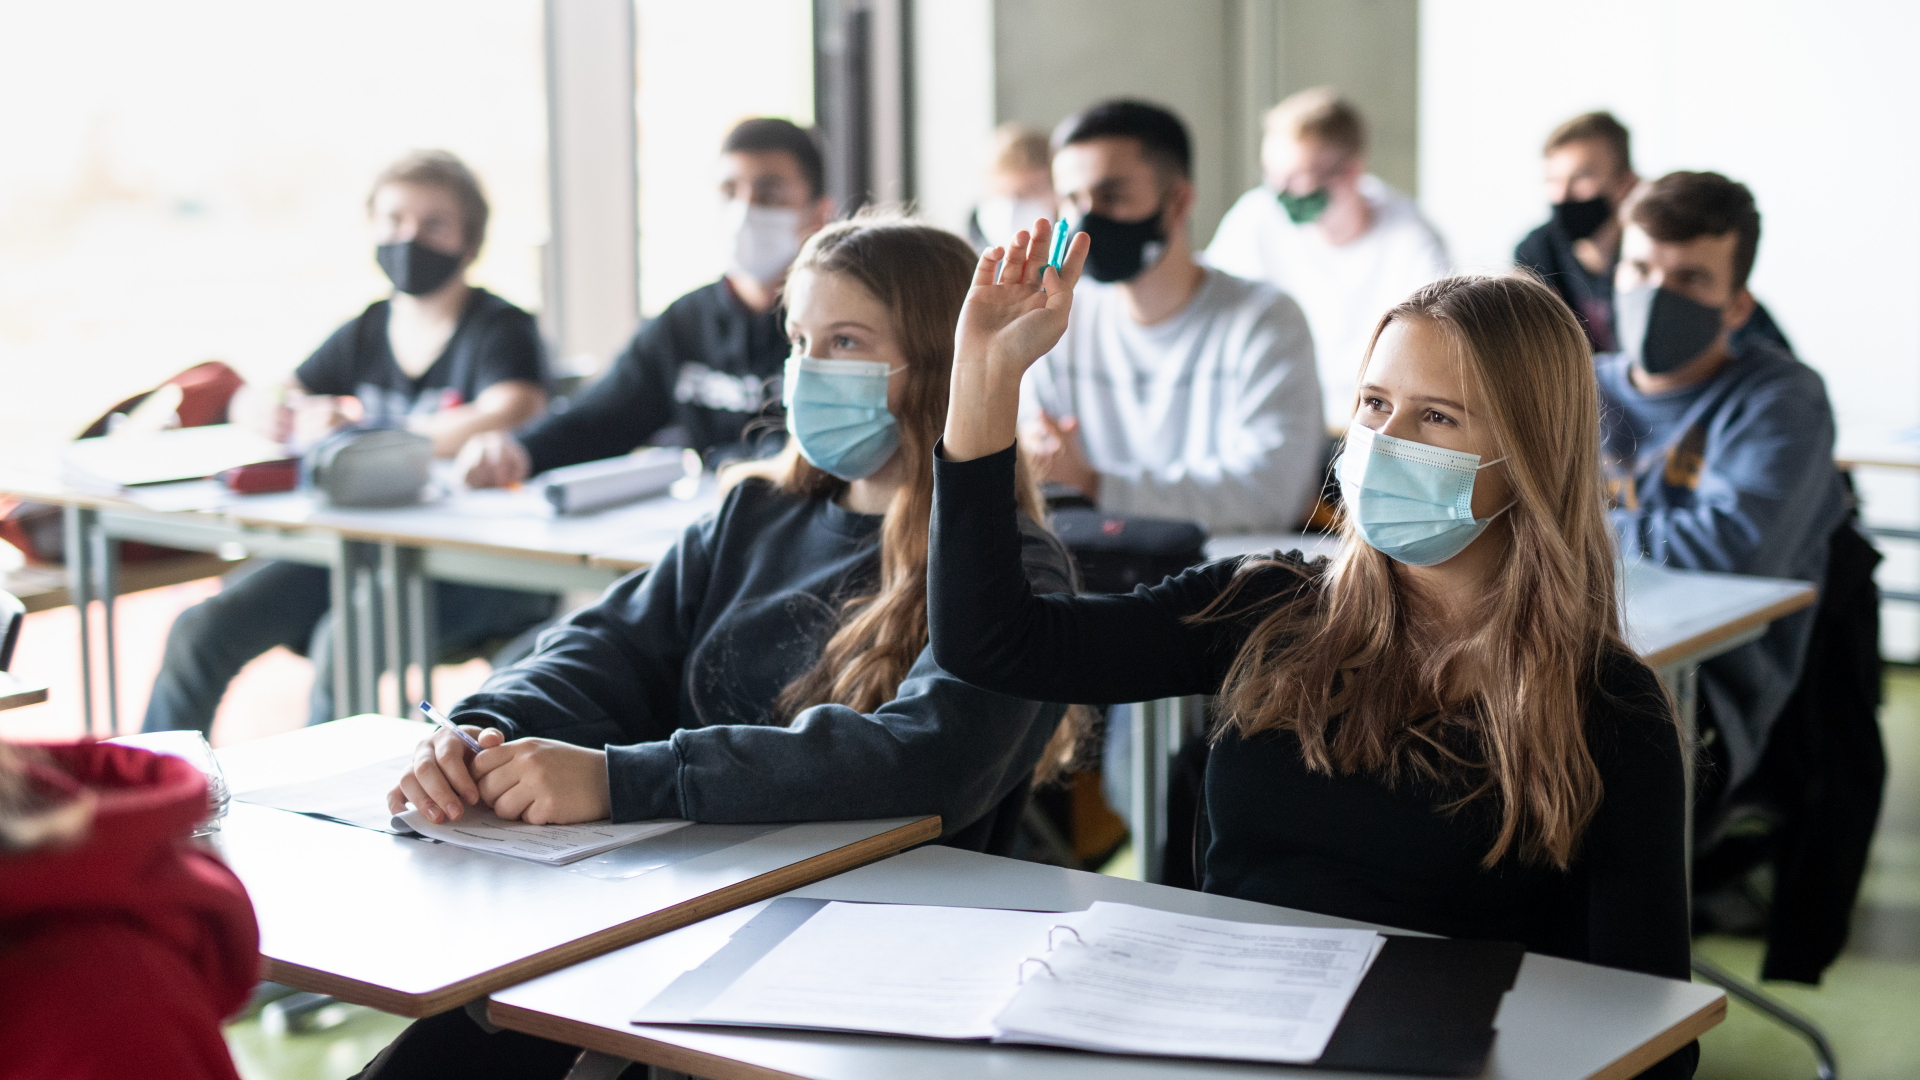 Schülerinnen und Schüler in München nehmen mit Mund- und Nasenschutz am Unterricht teil. (Archivbild)